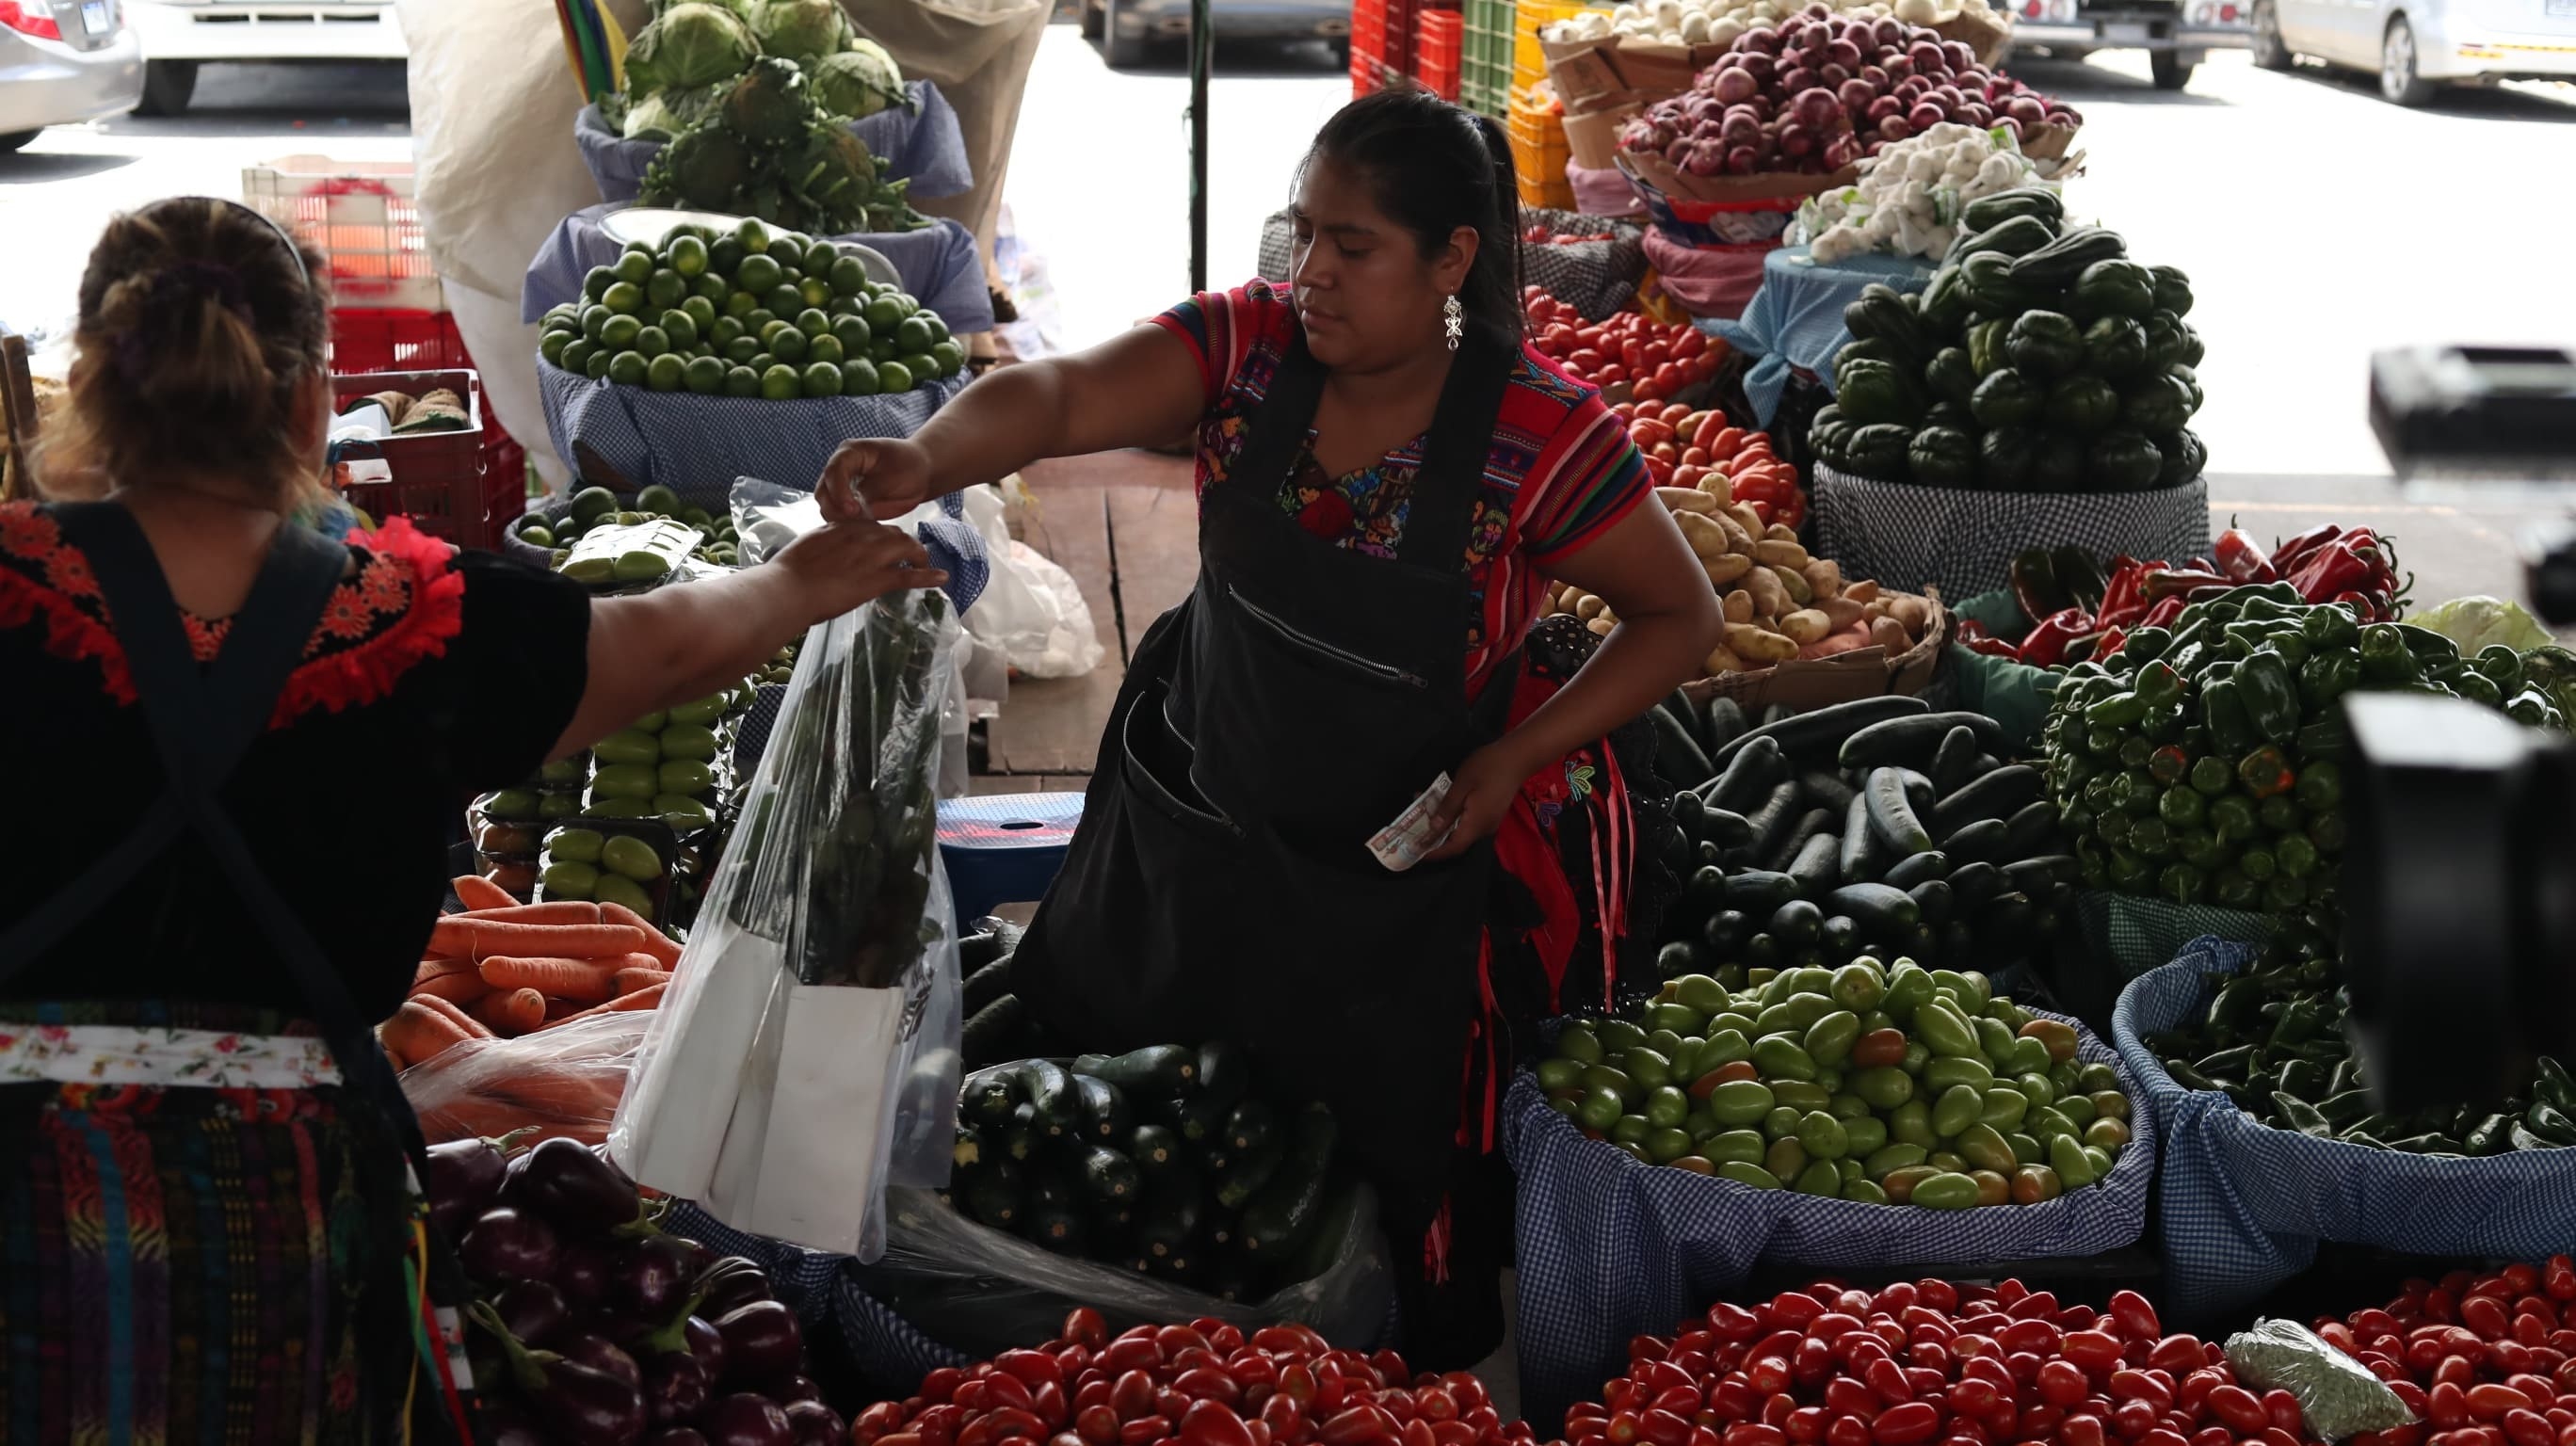 Los precios de varios productos siguen altos, por lo que vendedores y compradores se quejan. (Foto Prensa Libre: Esbin García)